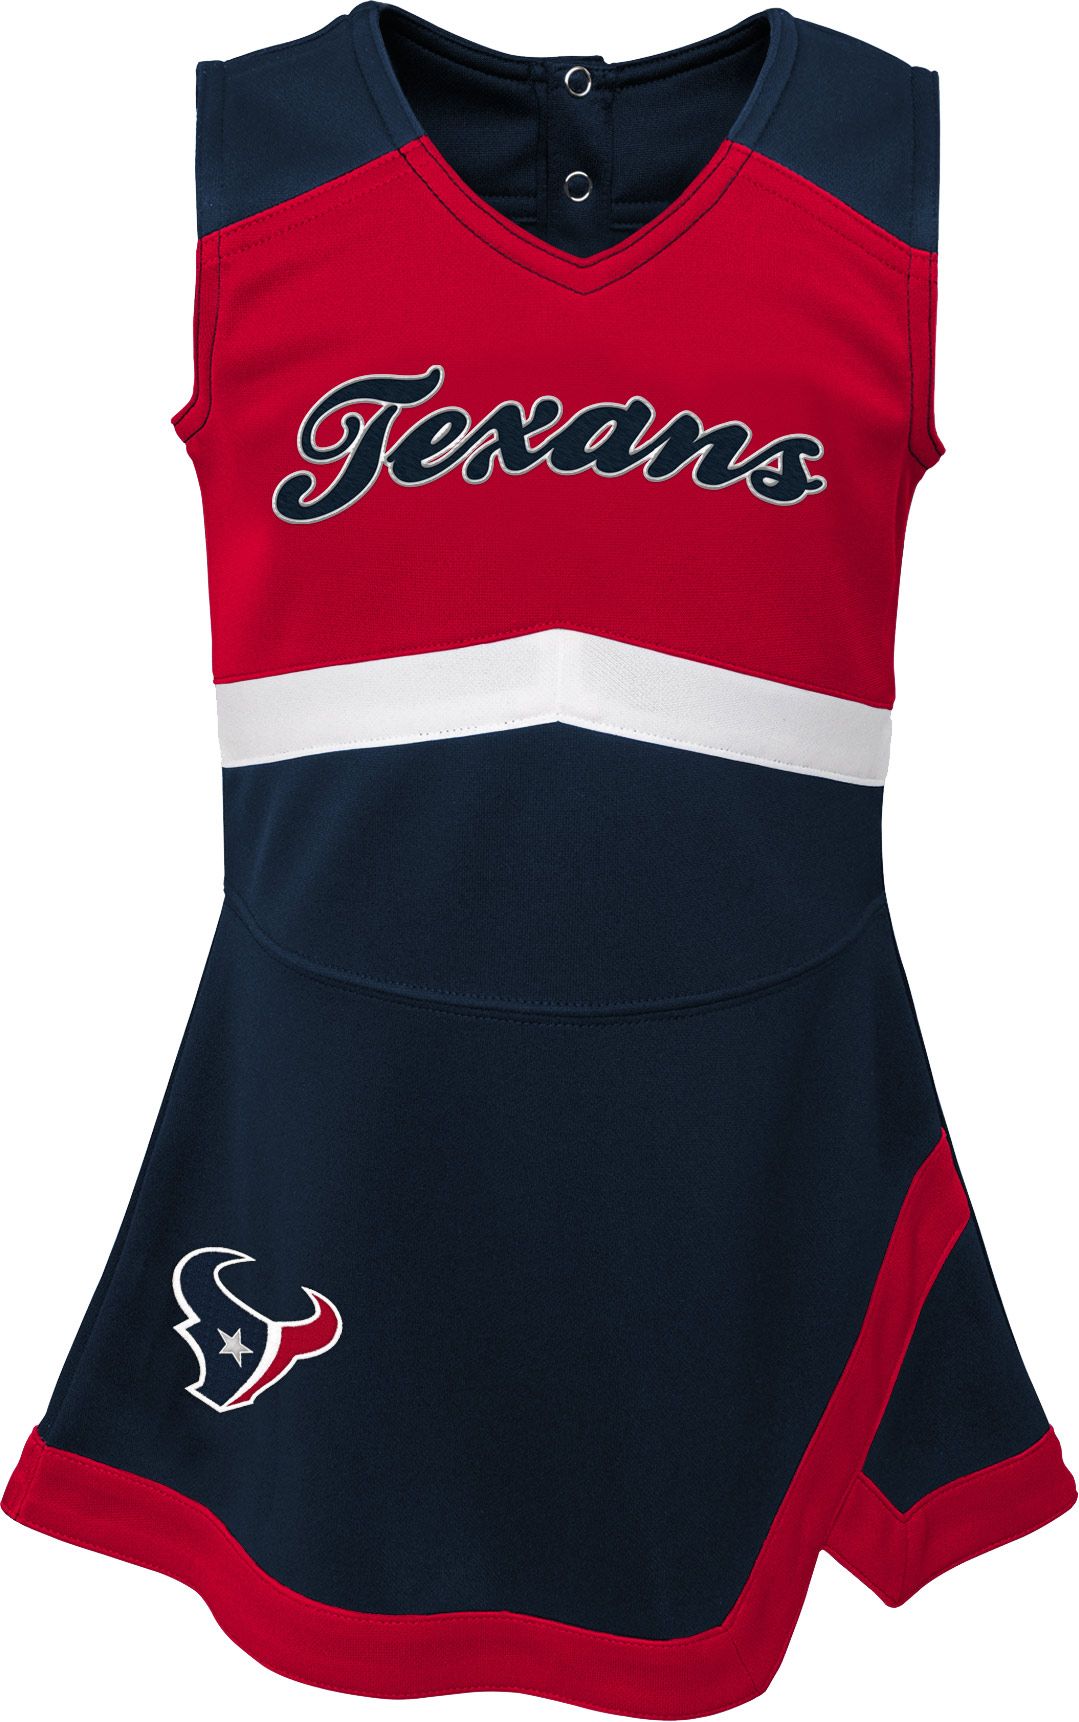 toddler texans jersey